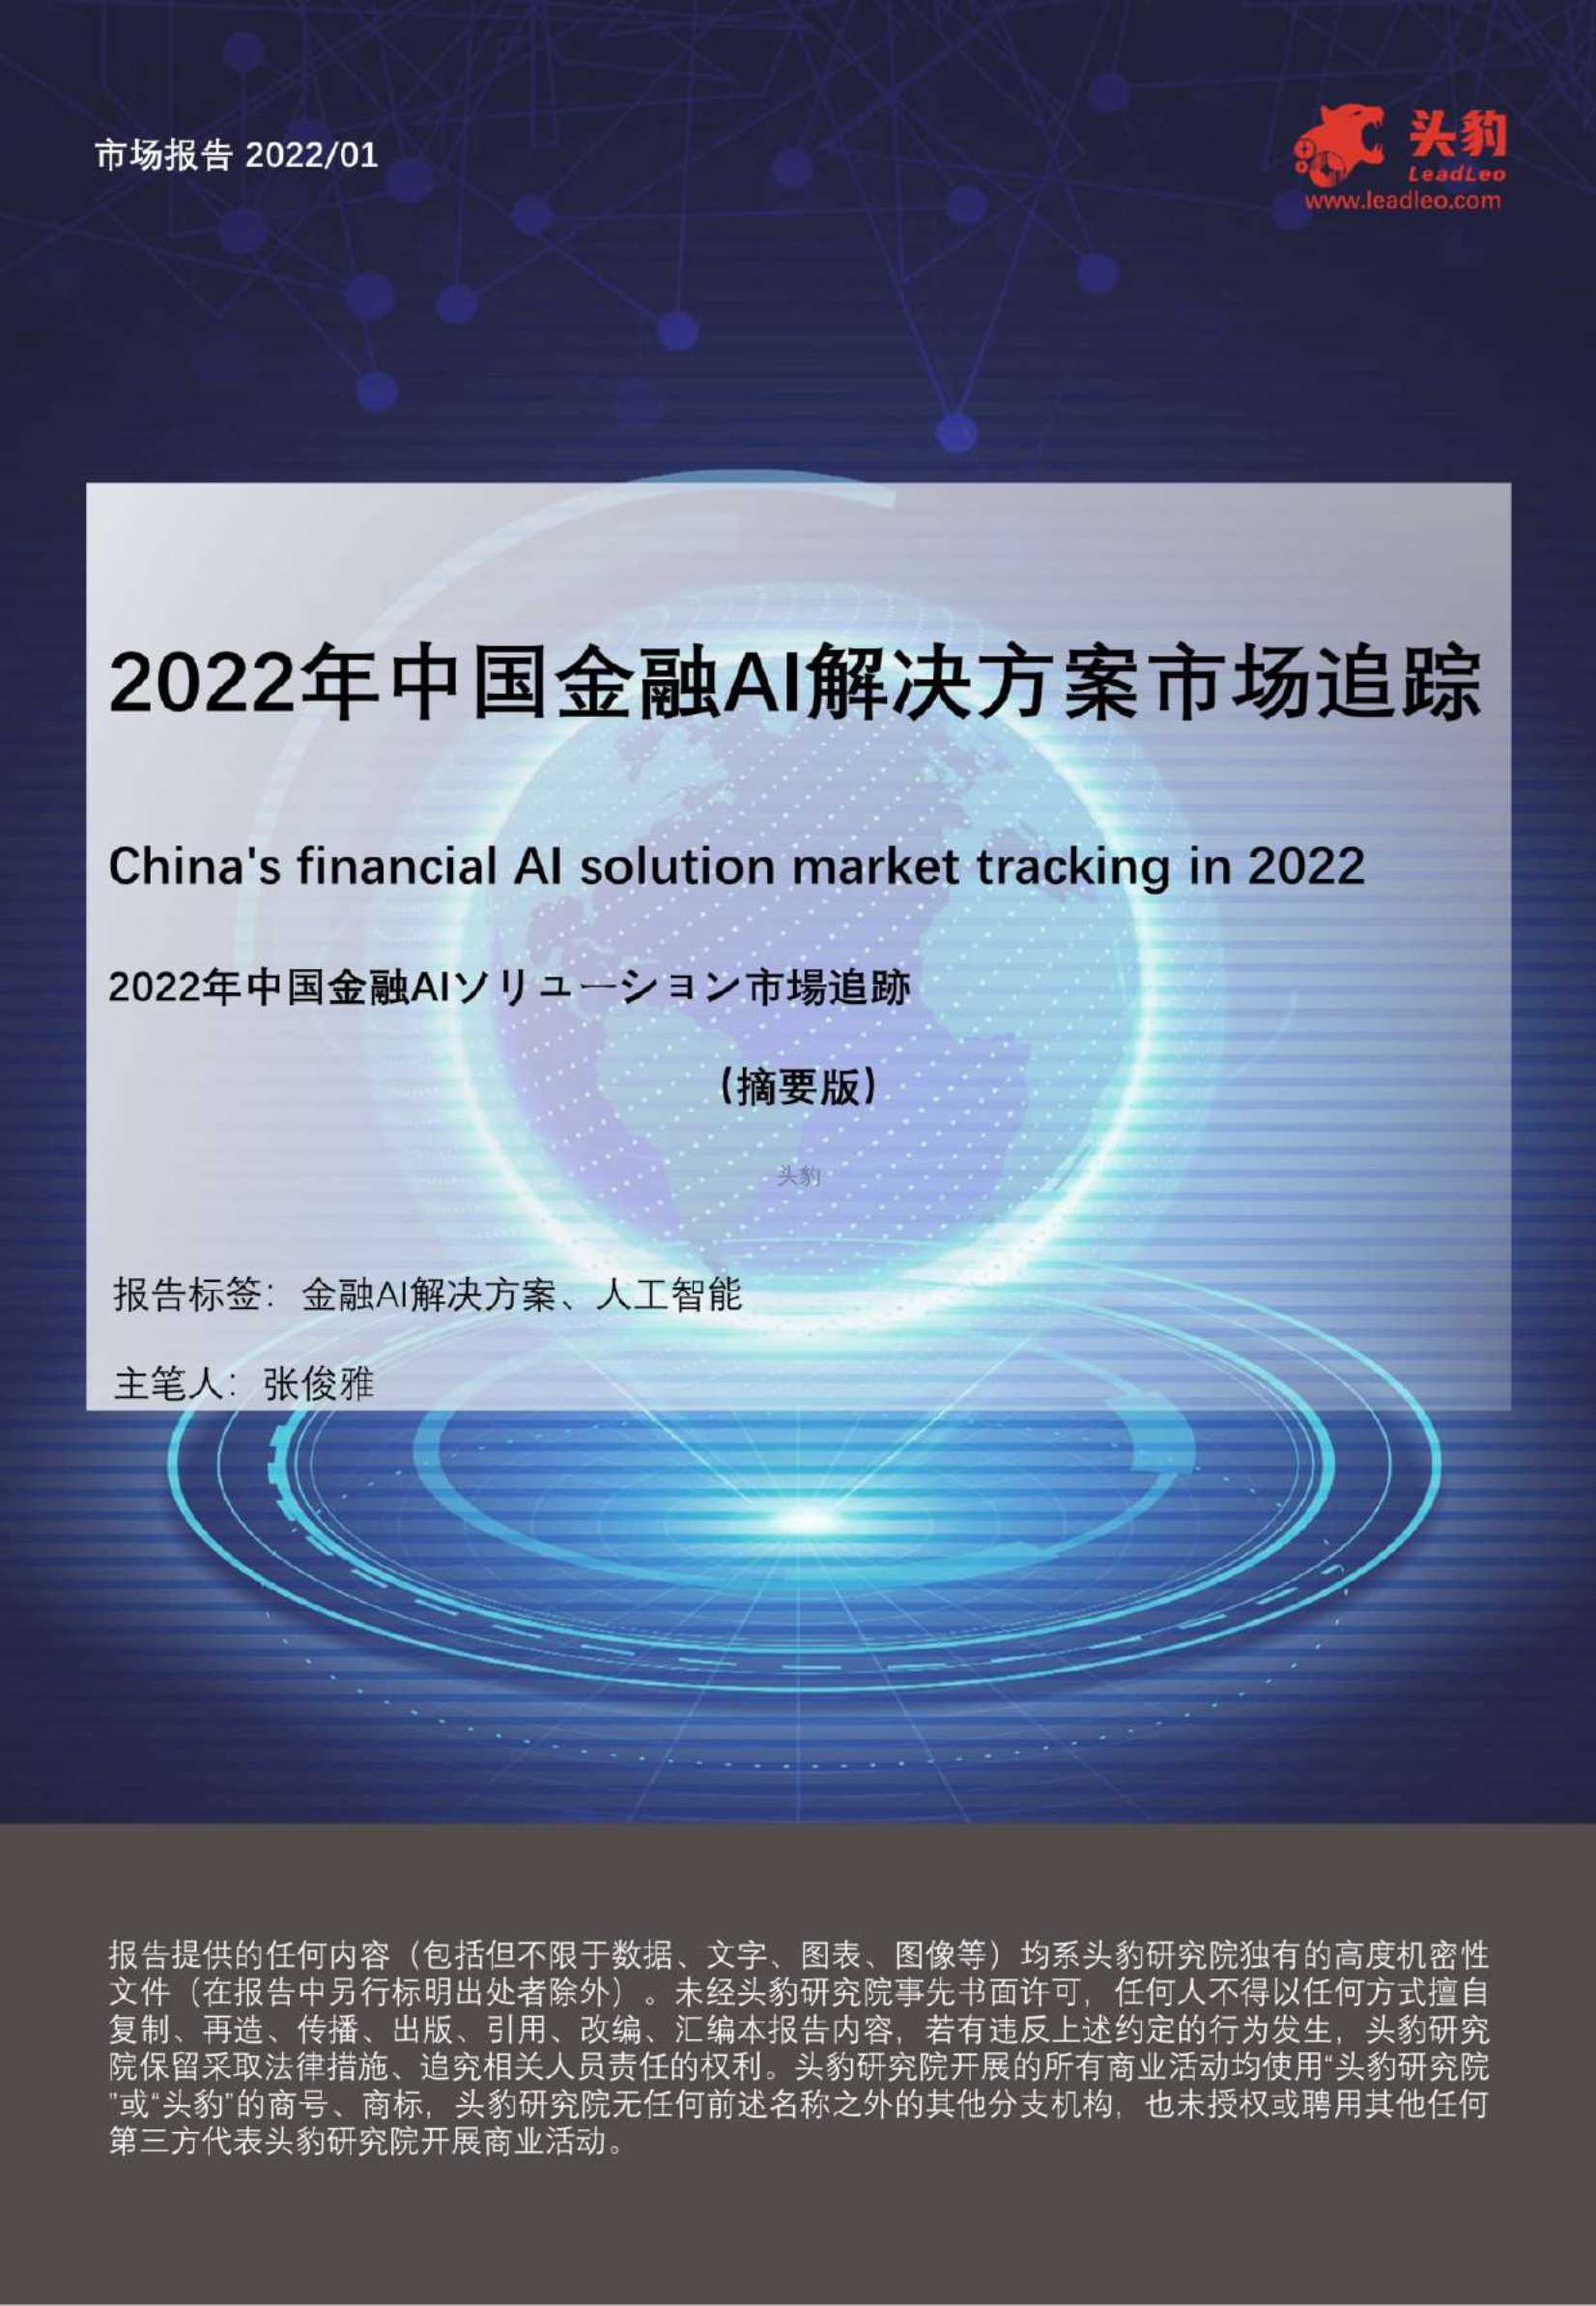 2022年中国金融AI解决方案市场追踪-2022.04-33页